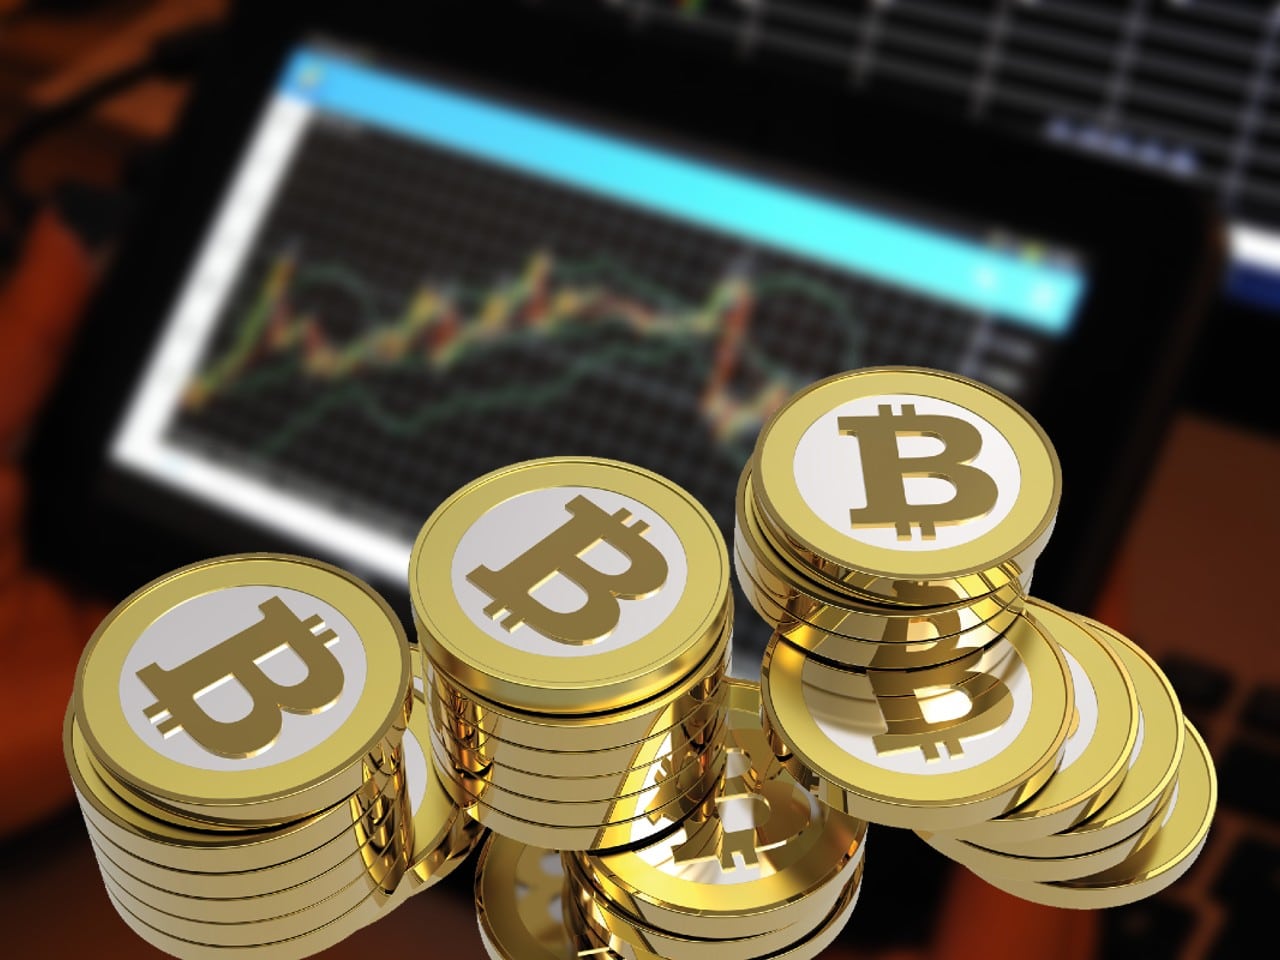 des pièces bitcoin (BTC) avec un graphique en chandelier en background